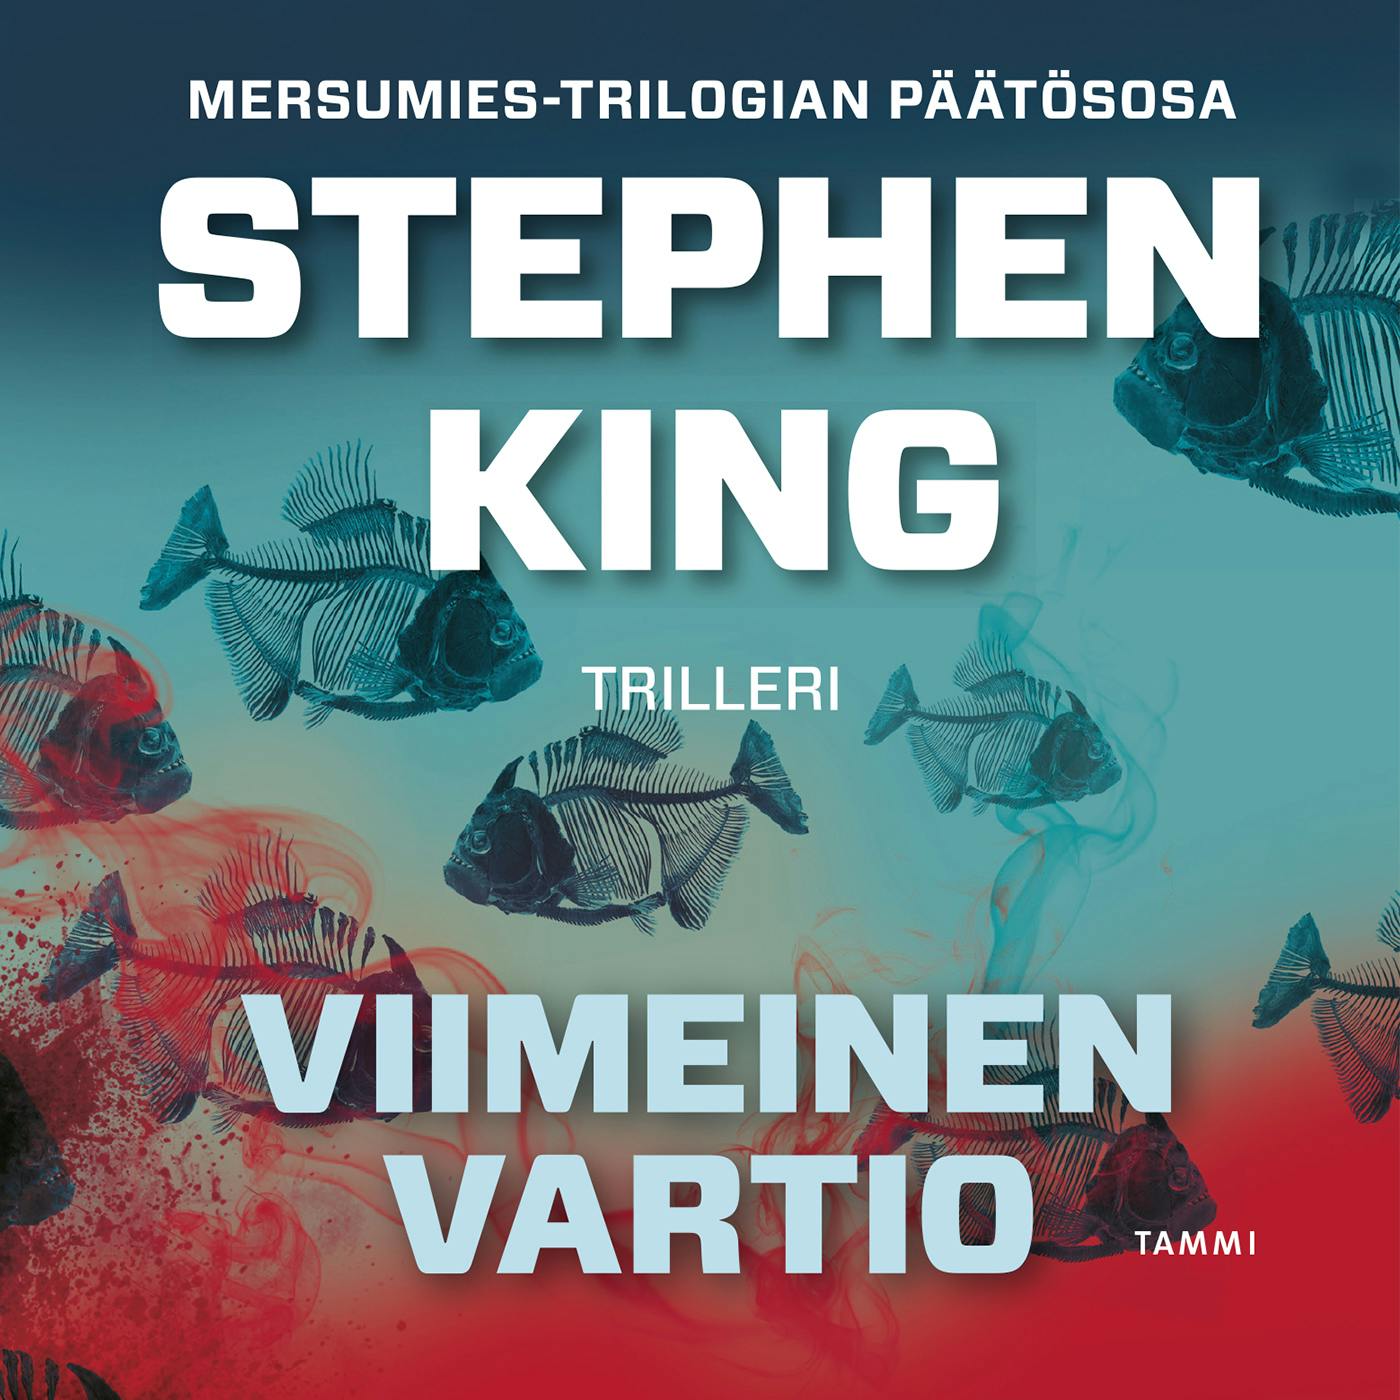 Viimeinen vartio - Stephen King